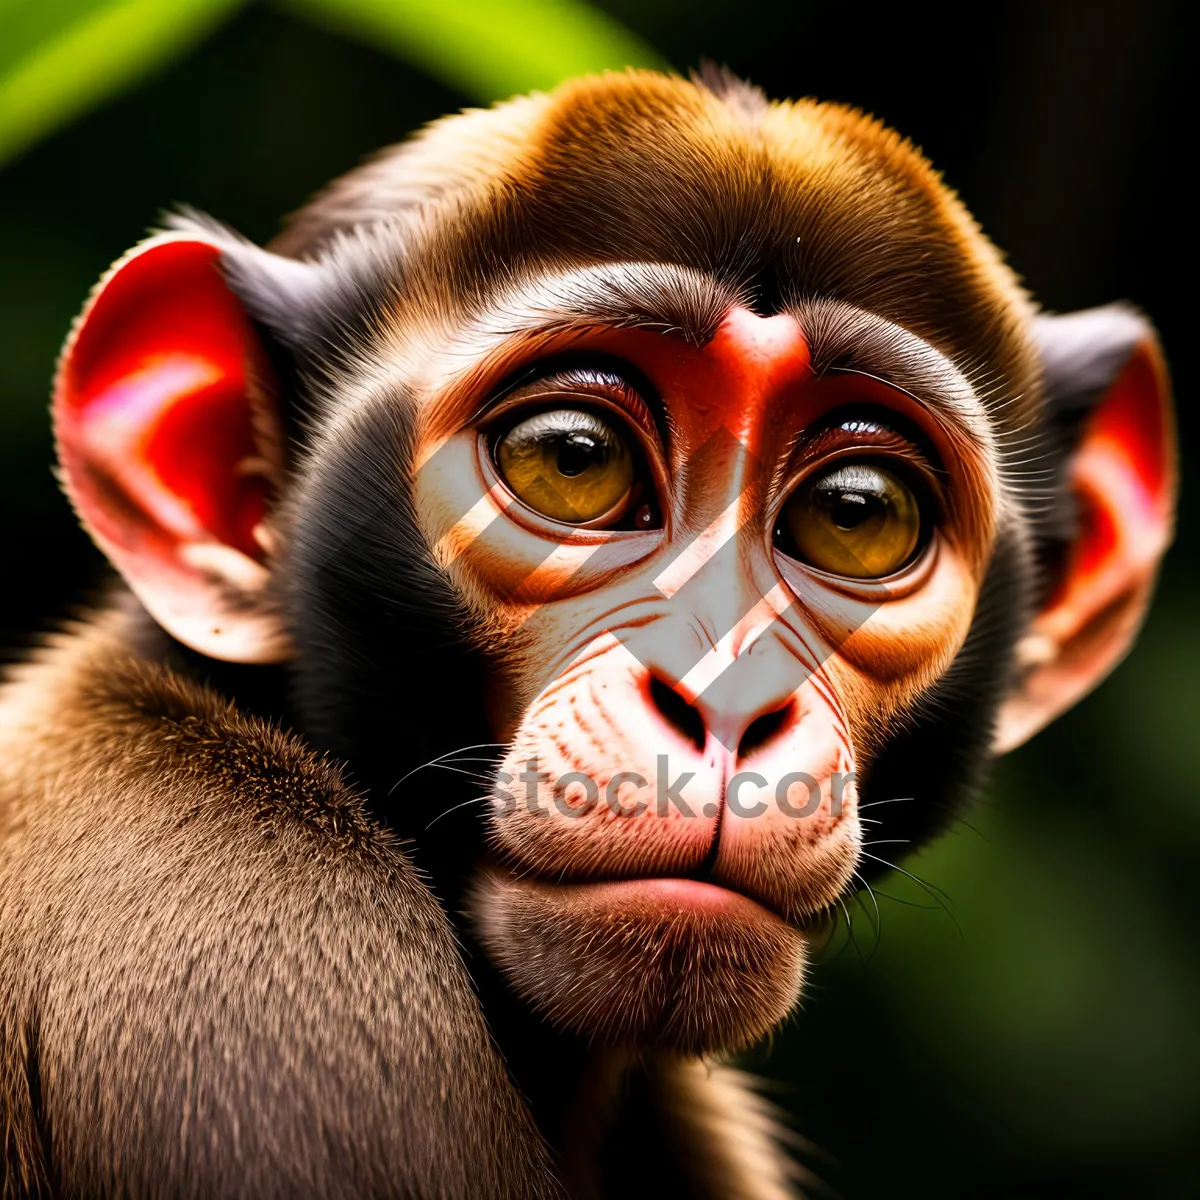 Picture of Wild Primate Portrait: Chimpanzee in Jungle Safari